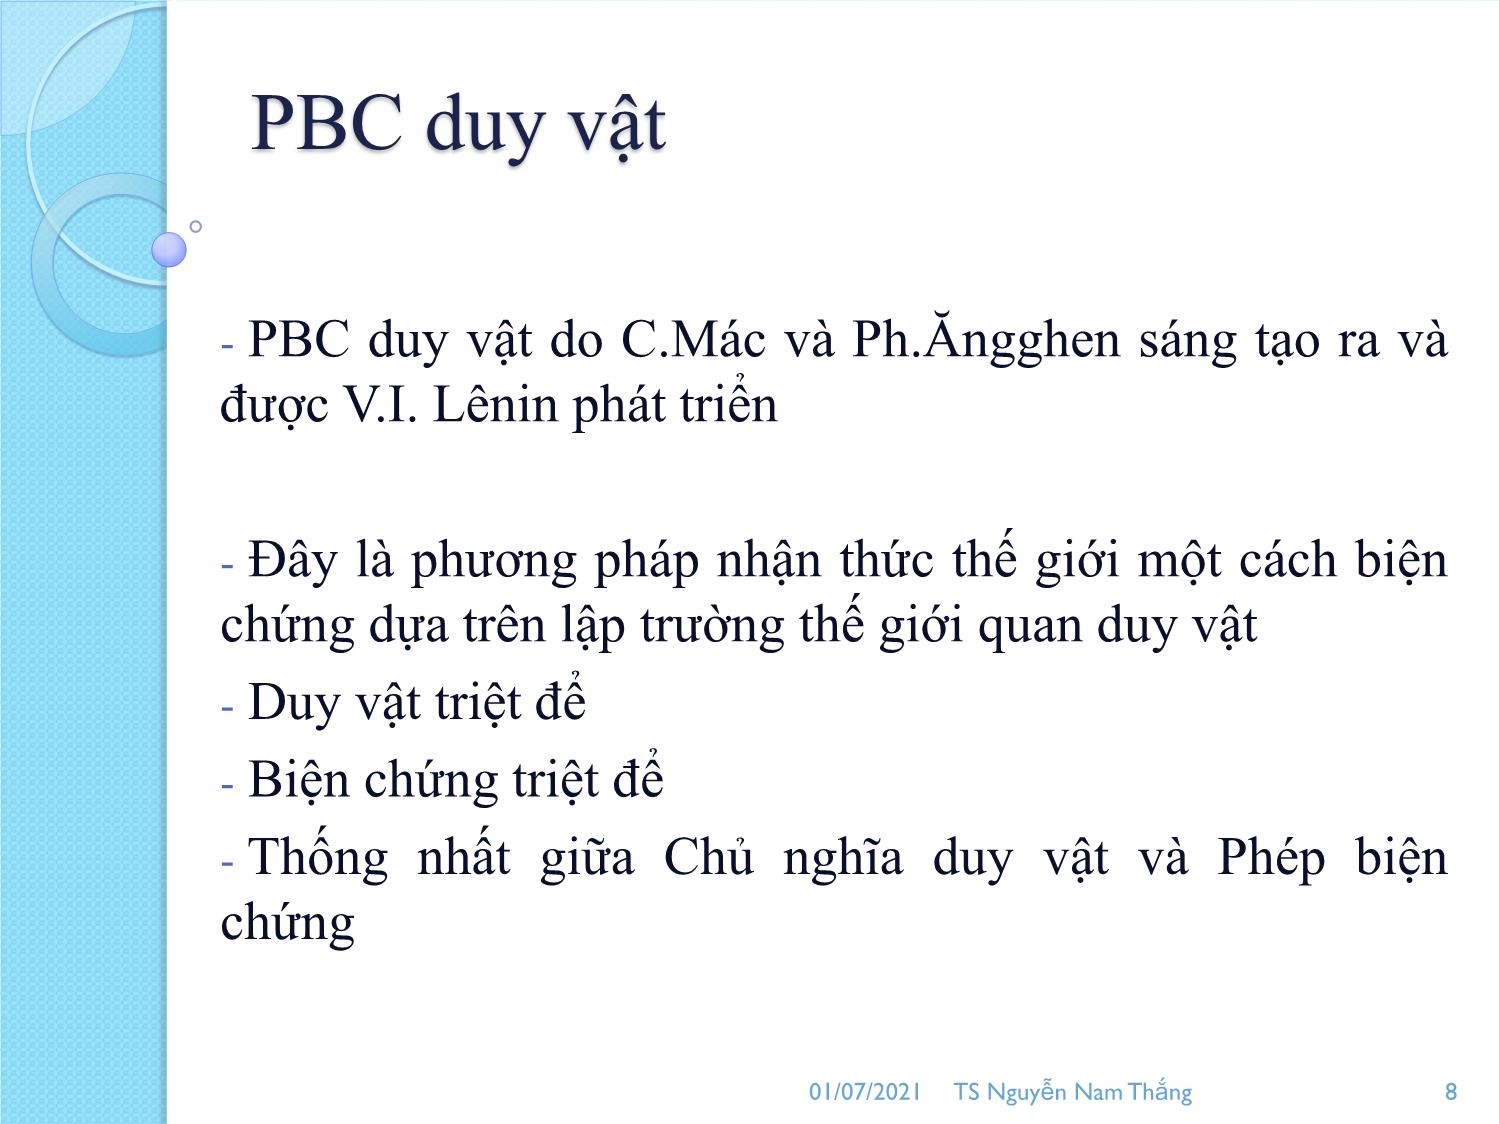 Bài giảng Phép biện chứng duy vật - Nguyễn Nam Thắng trang 8